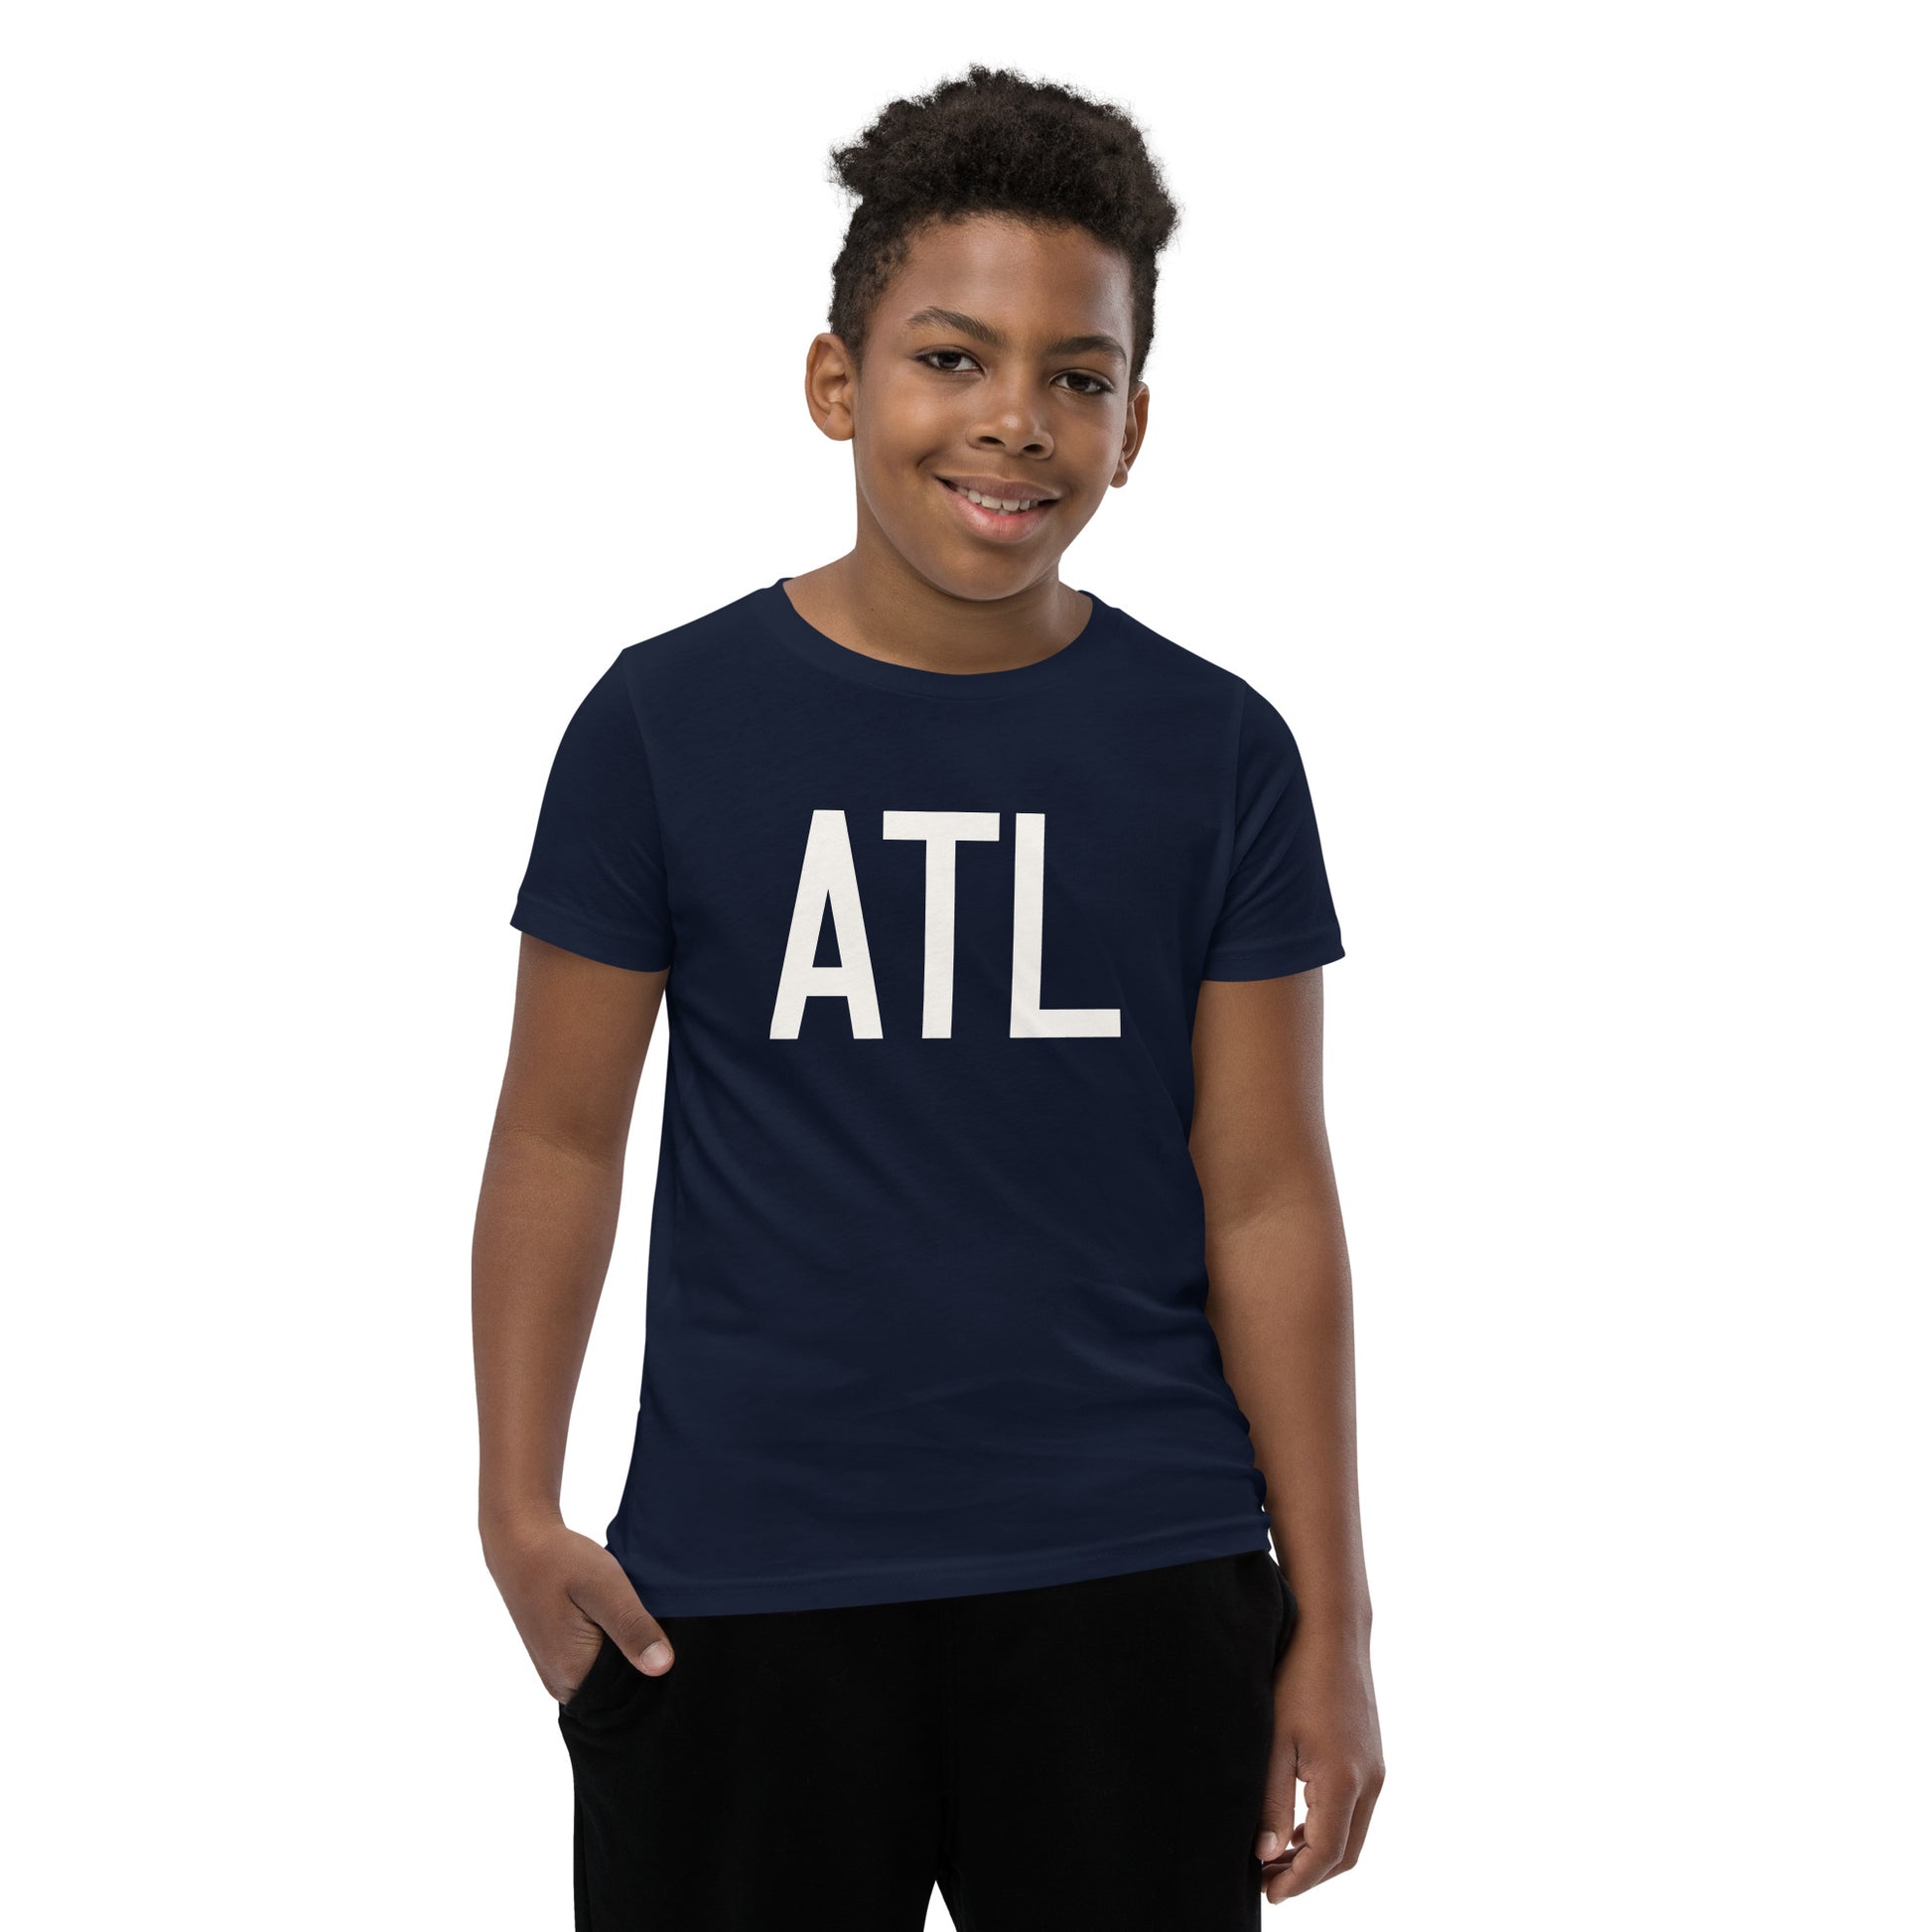 Kid's T-Shirt - White Graphic • ATL Atlanta • YHM Designs - Image 01